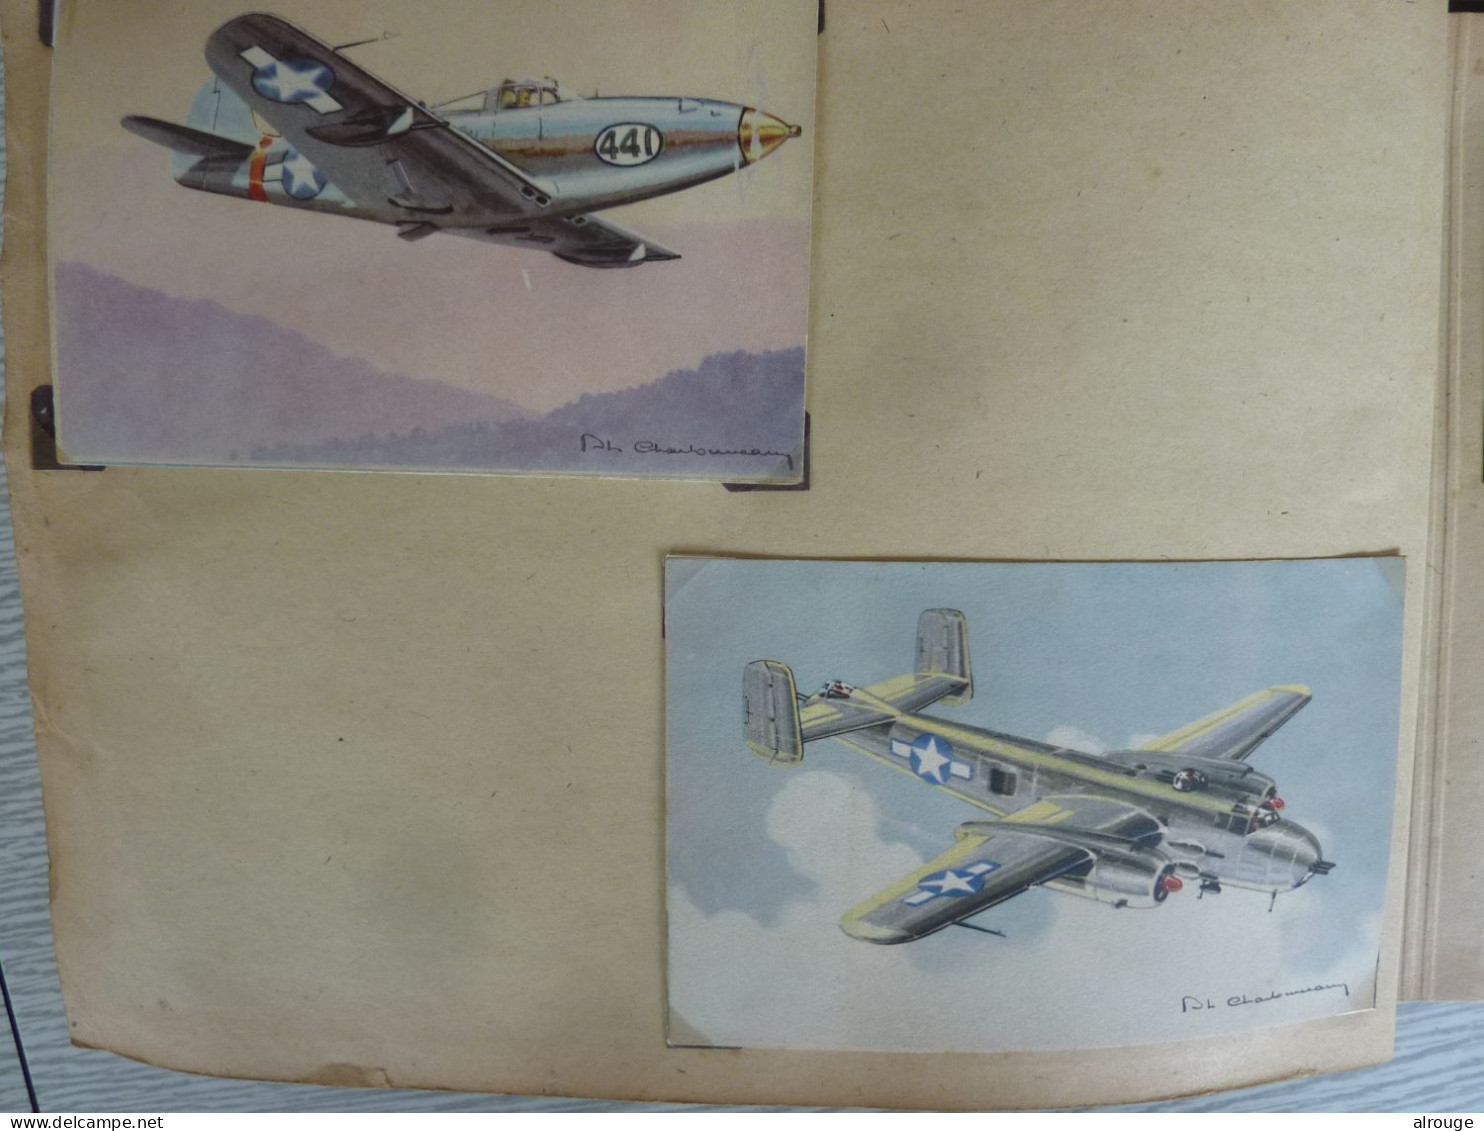 Album de CP d'Avions de guerre 1939-1945 , 65 Cartes postales